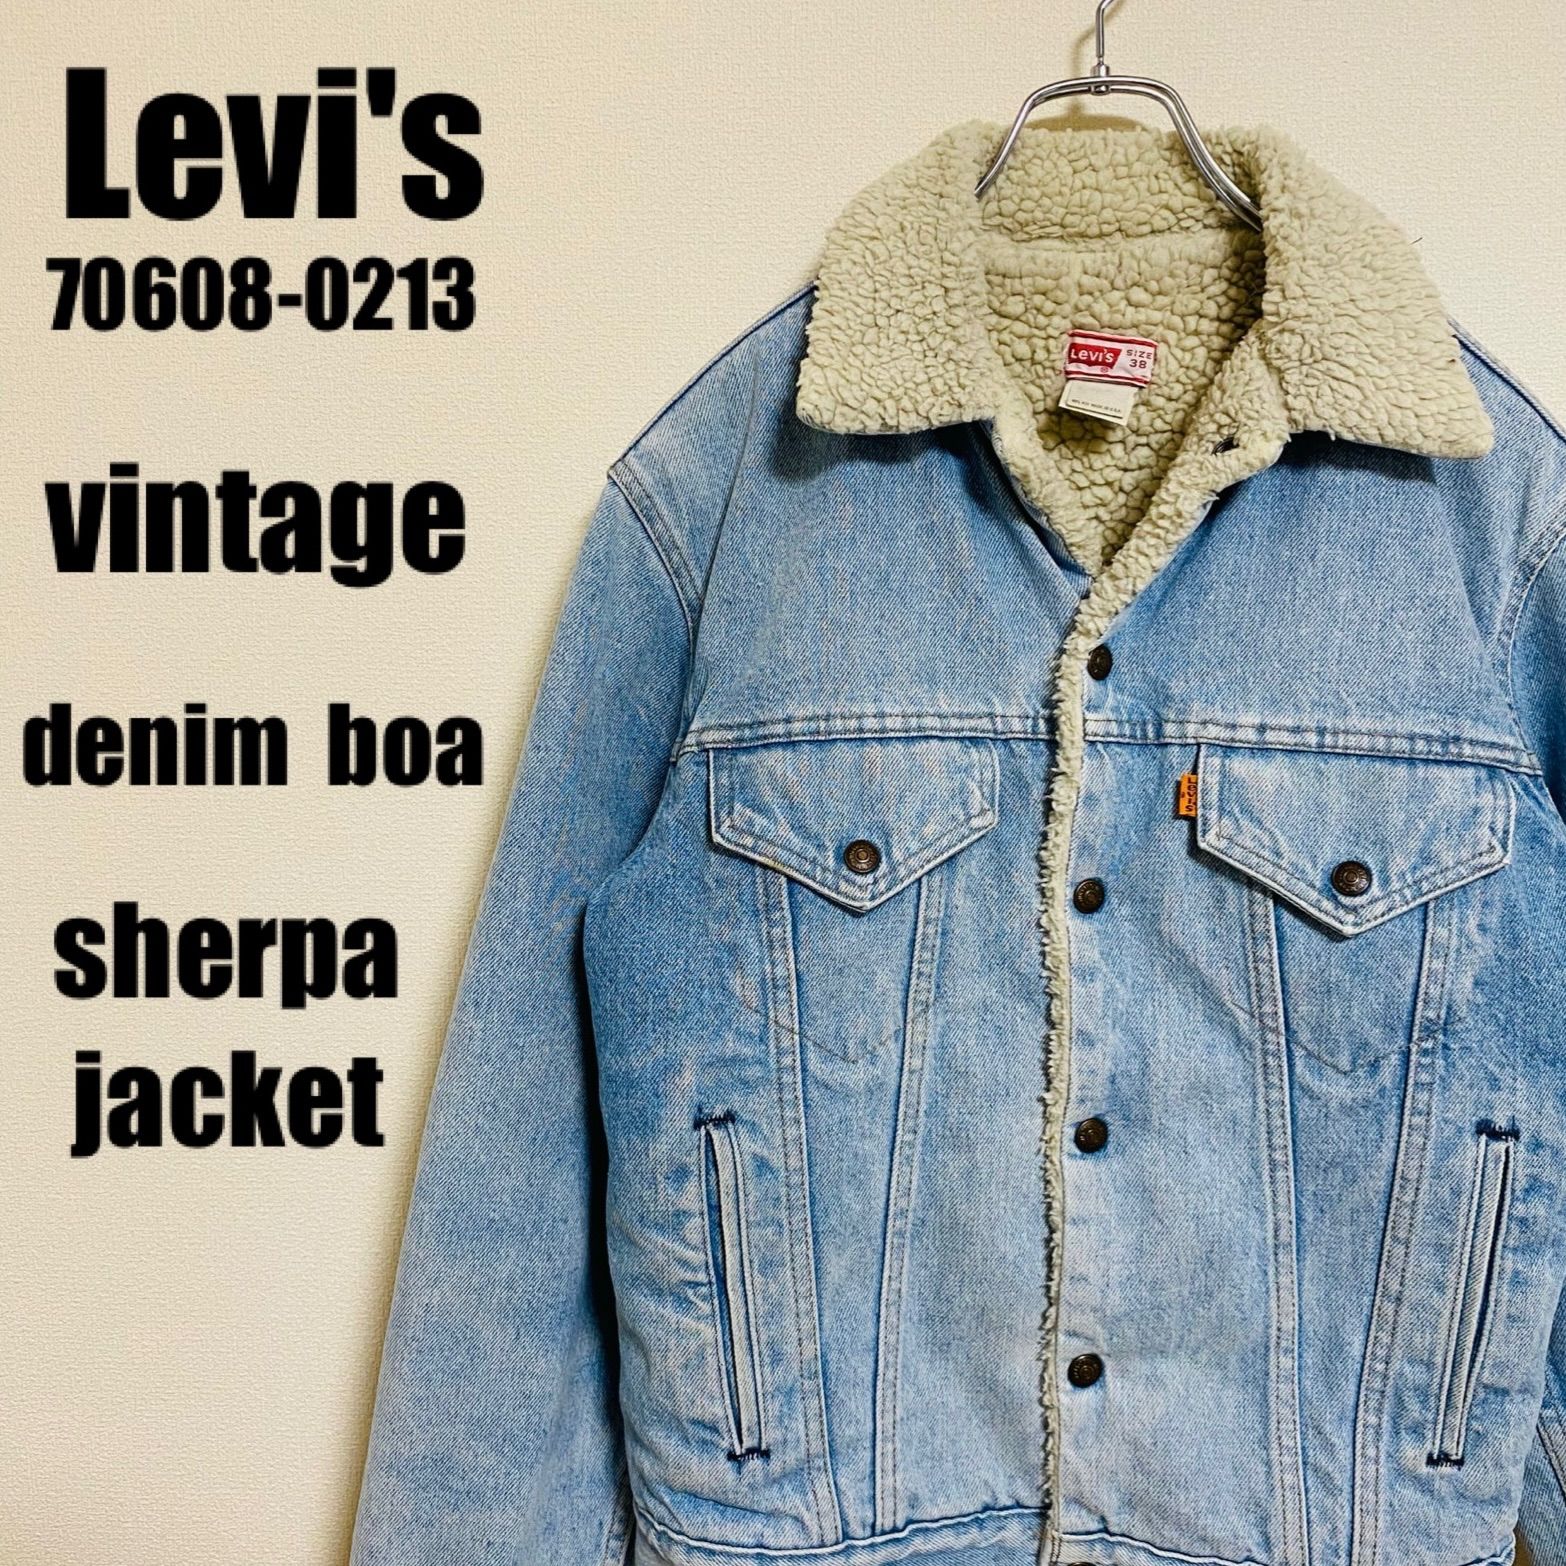 リーバイス Levi's 70608-0213 ヴィンテージ デニム ボアジャケット denim boa シェルパジャケット sherpa  jacket メンズ サイズ38 実寸 Mサイズ 相当 USA アメリカ製 オレンジタブ ボタン裏527 アメカジ